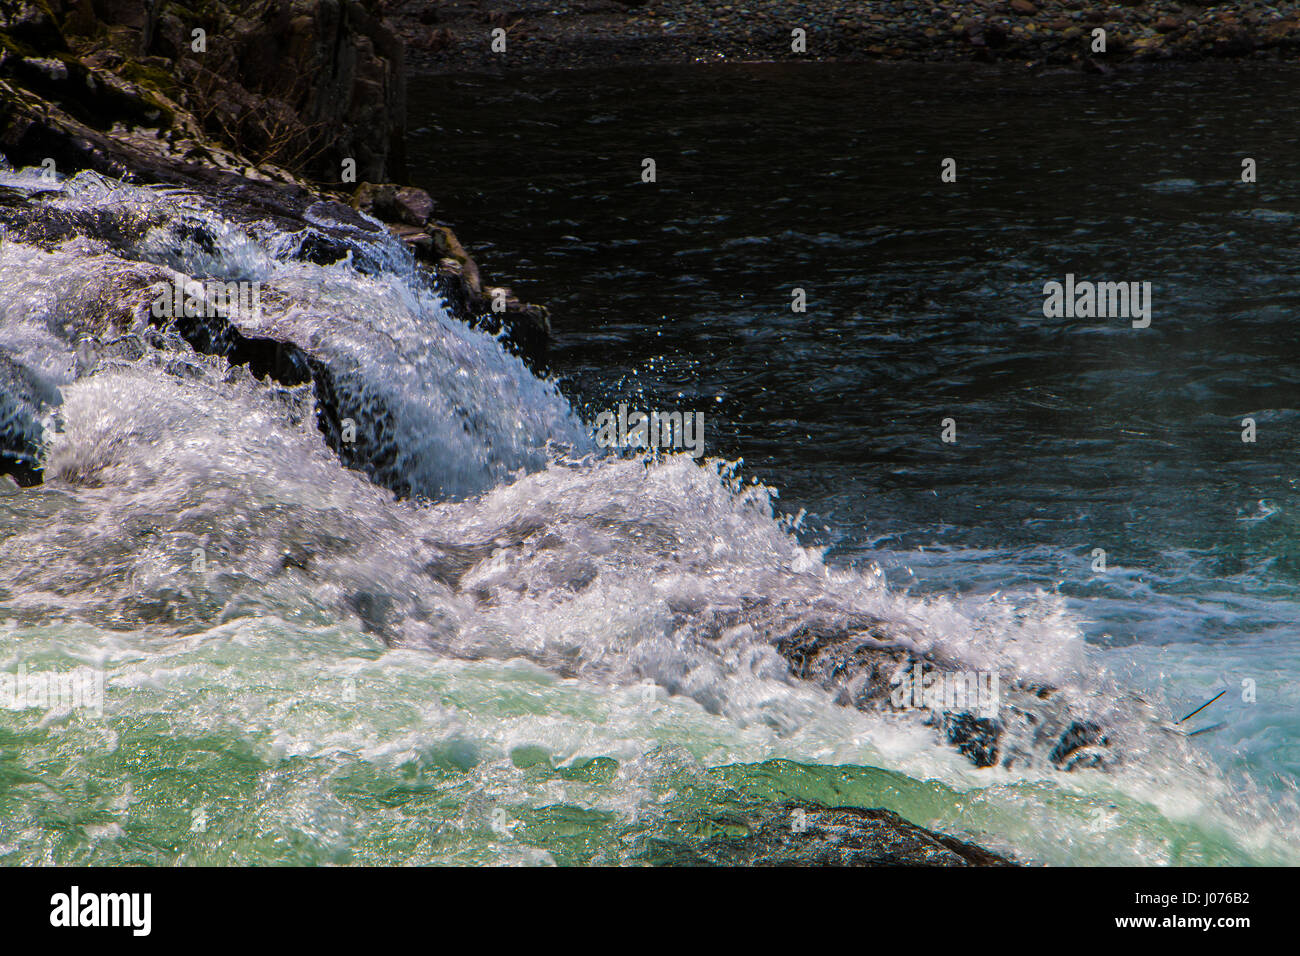 Un arrêt sur image, de projections d'eau sur une légère baisse dans la rivière. Banque D'Images